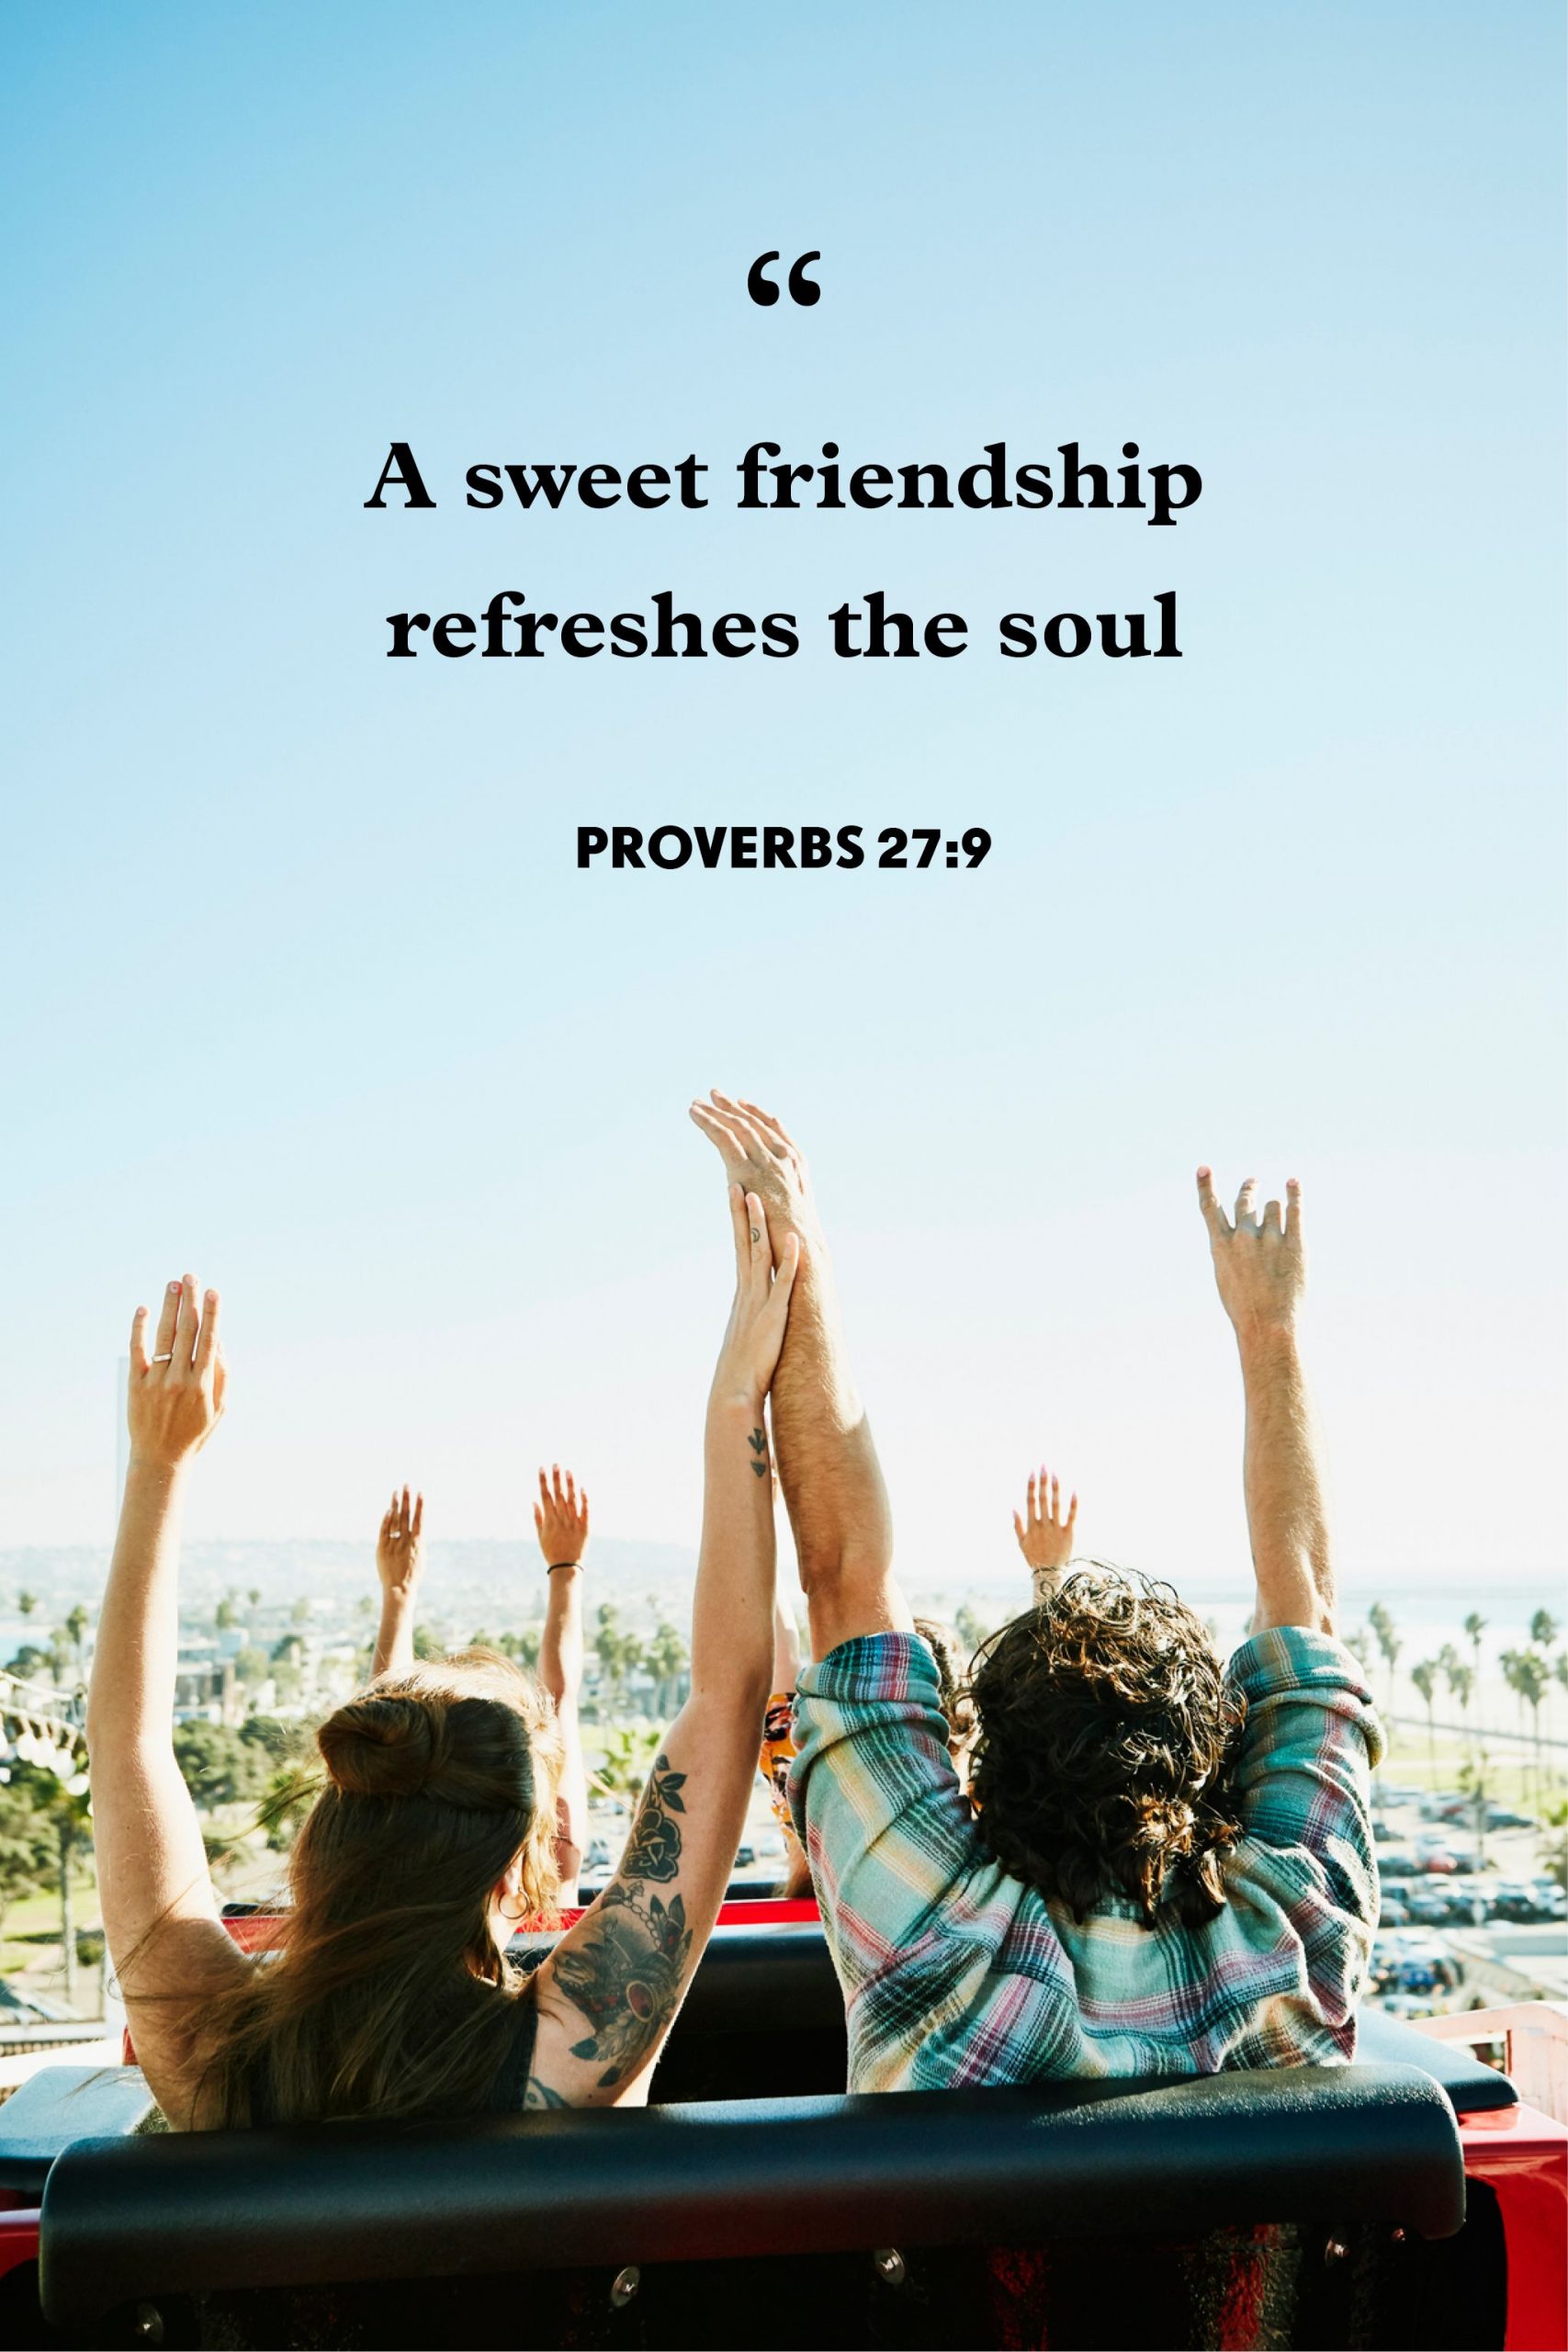 120 Short Friendship Quotes Your Best Friend Will Love - Websplashers